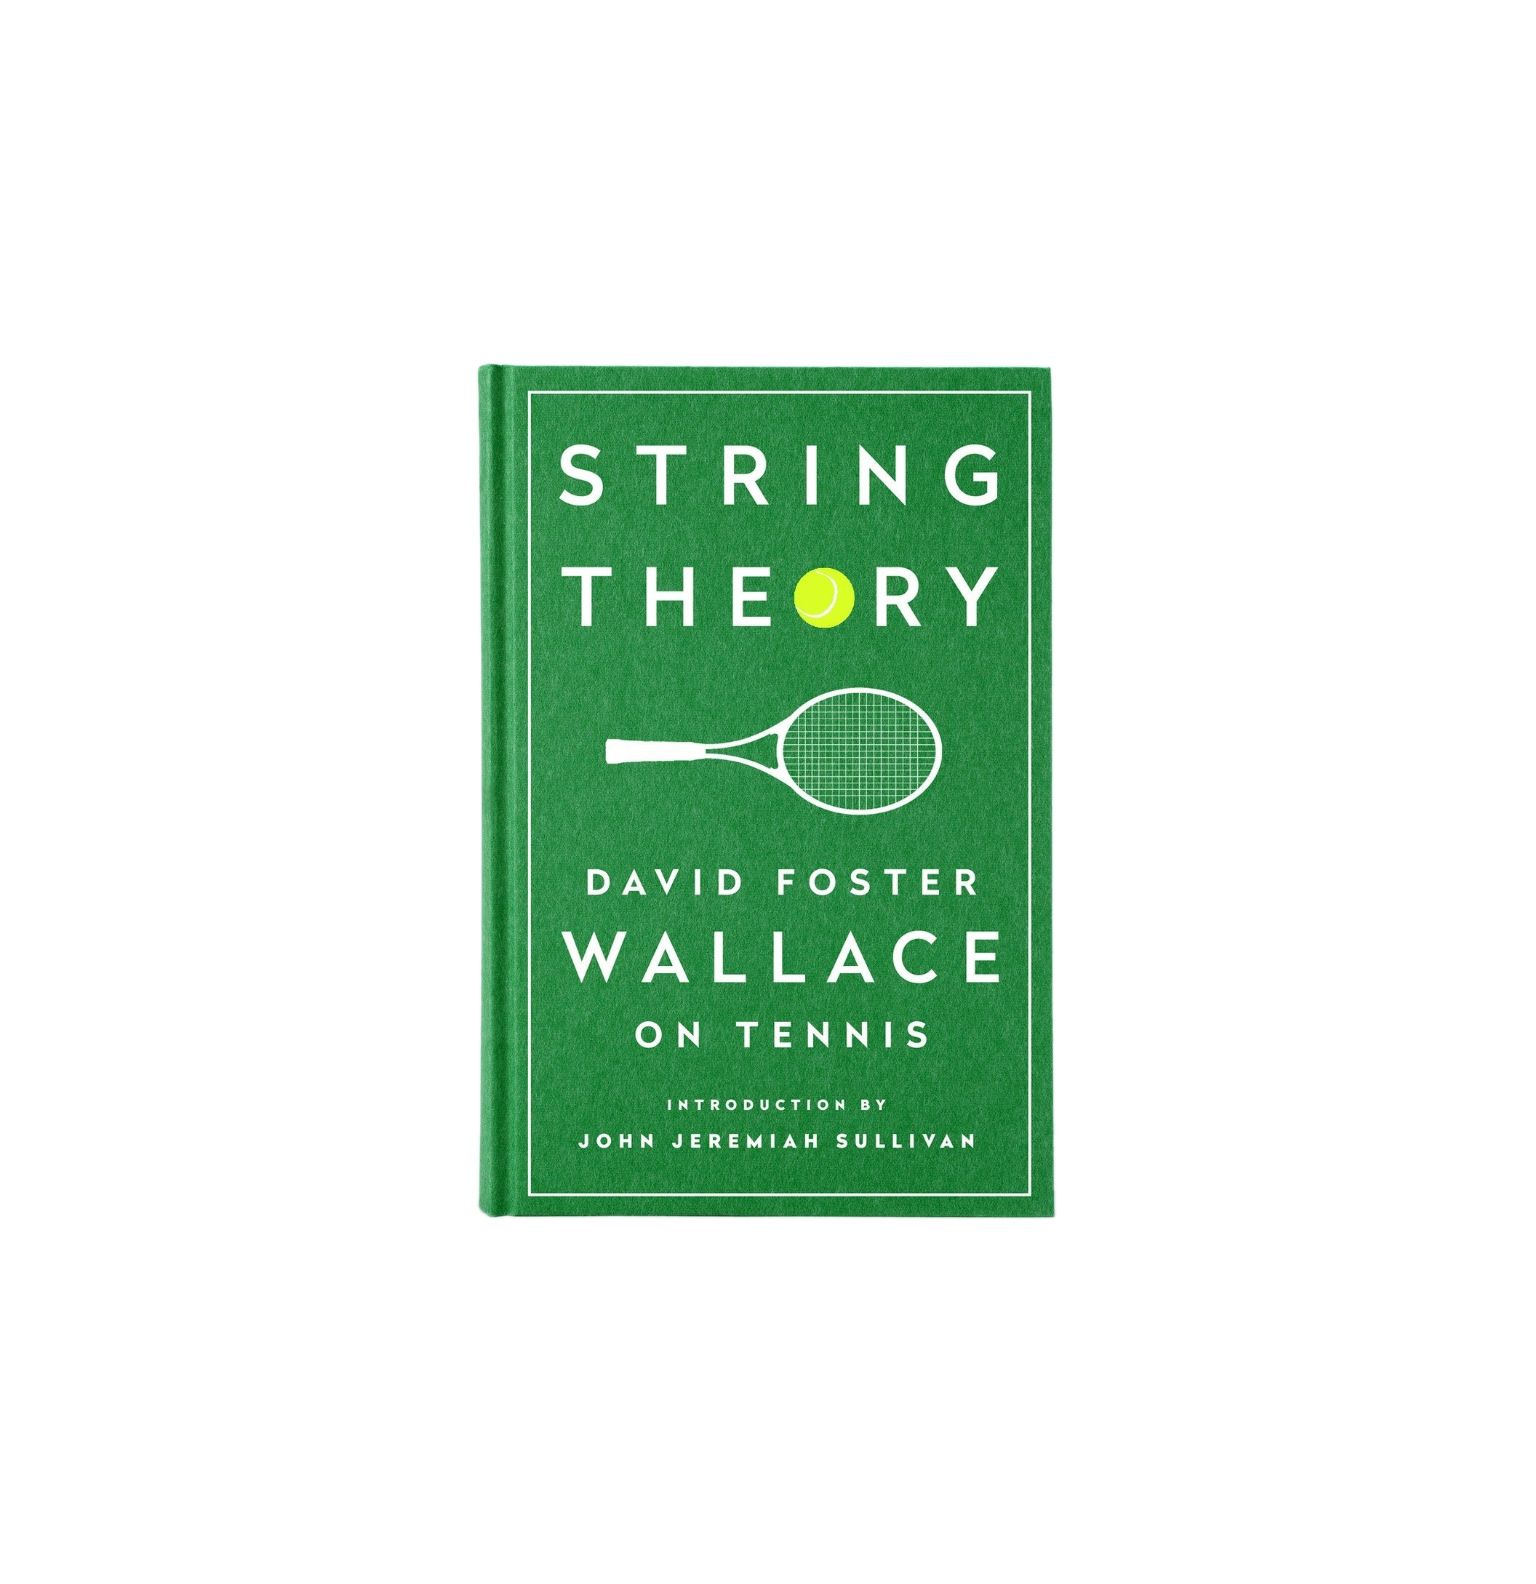 Teoría de cuerdas: David Foster Wallace sobre tenis, por David Foster Wallace